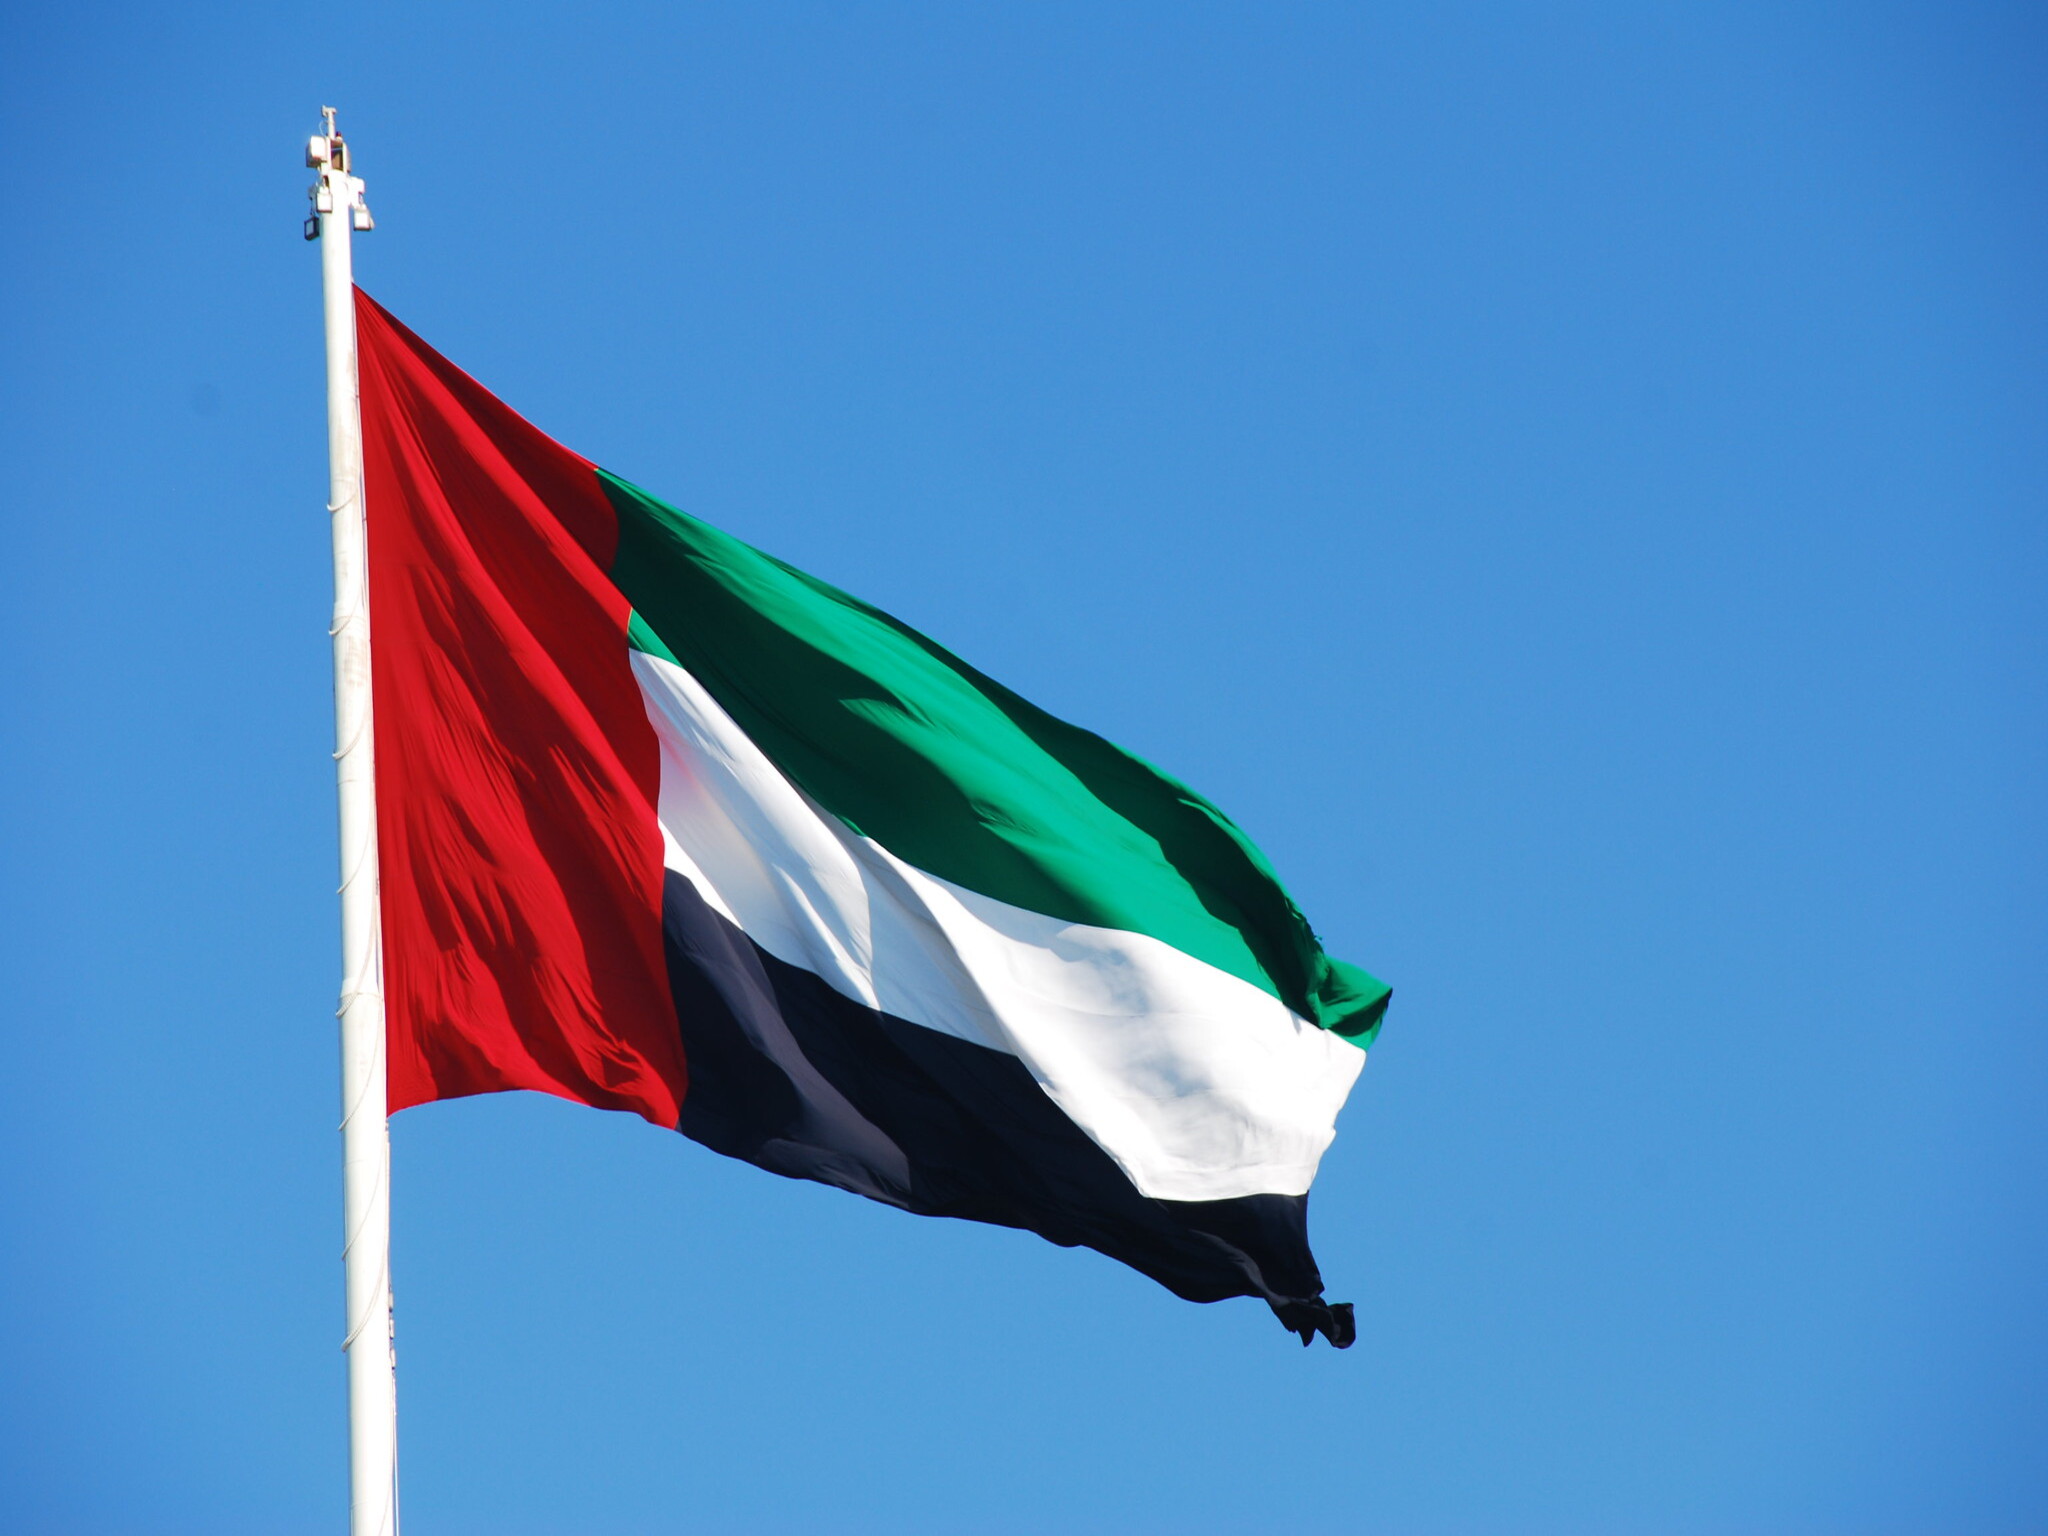 الإمارات تدعو مواطنيها إلى توخي الحيطة والحذر أثناء السفر بعد إرتفاع معدل السرقة